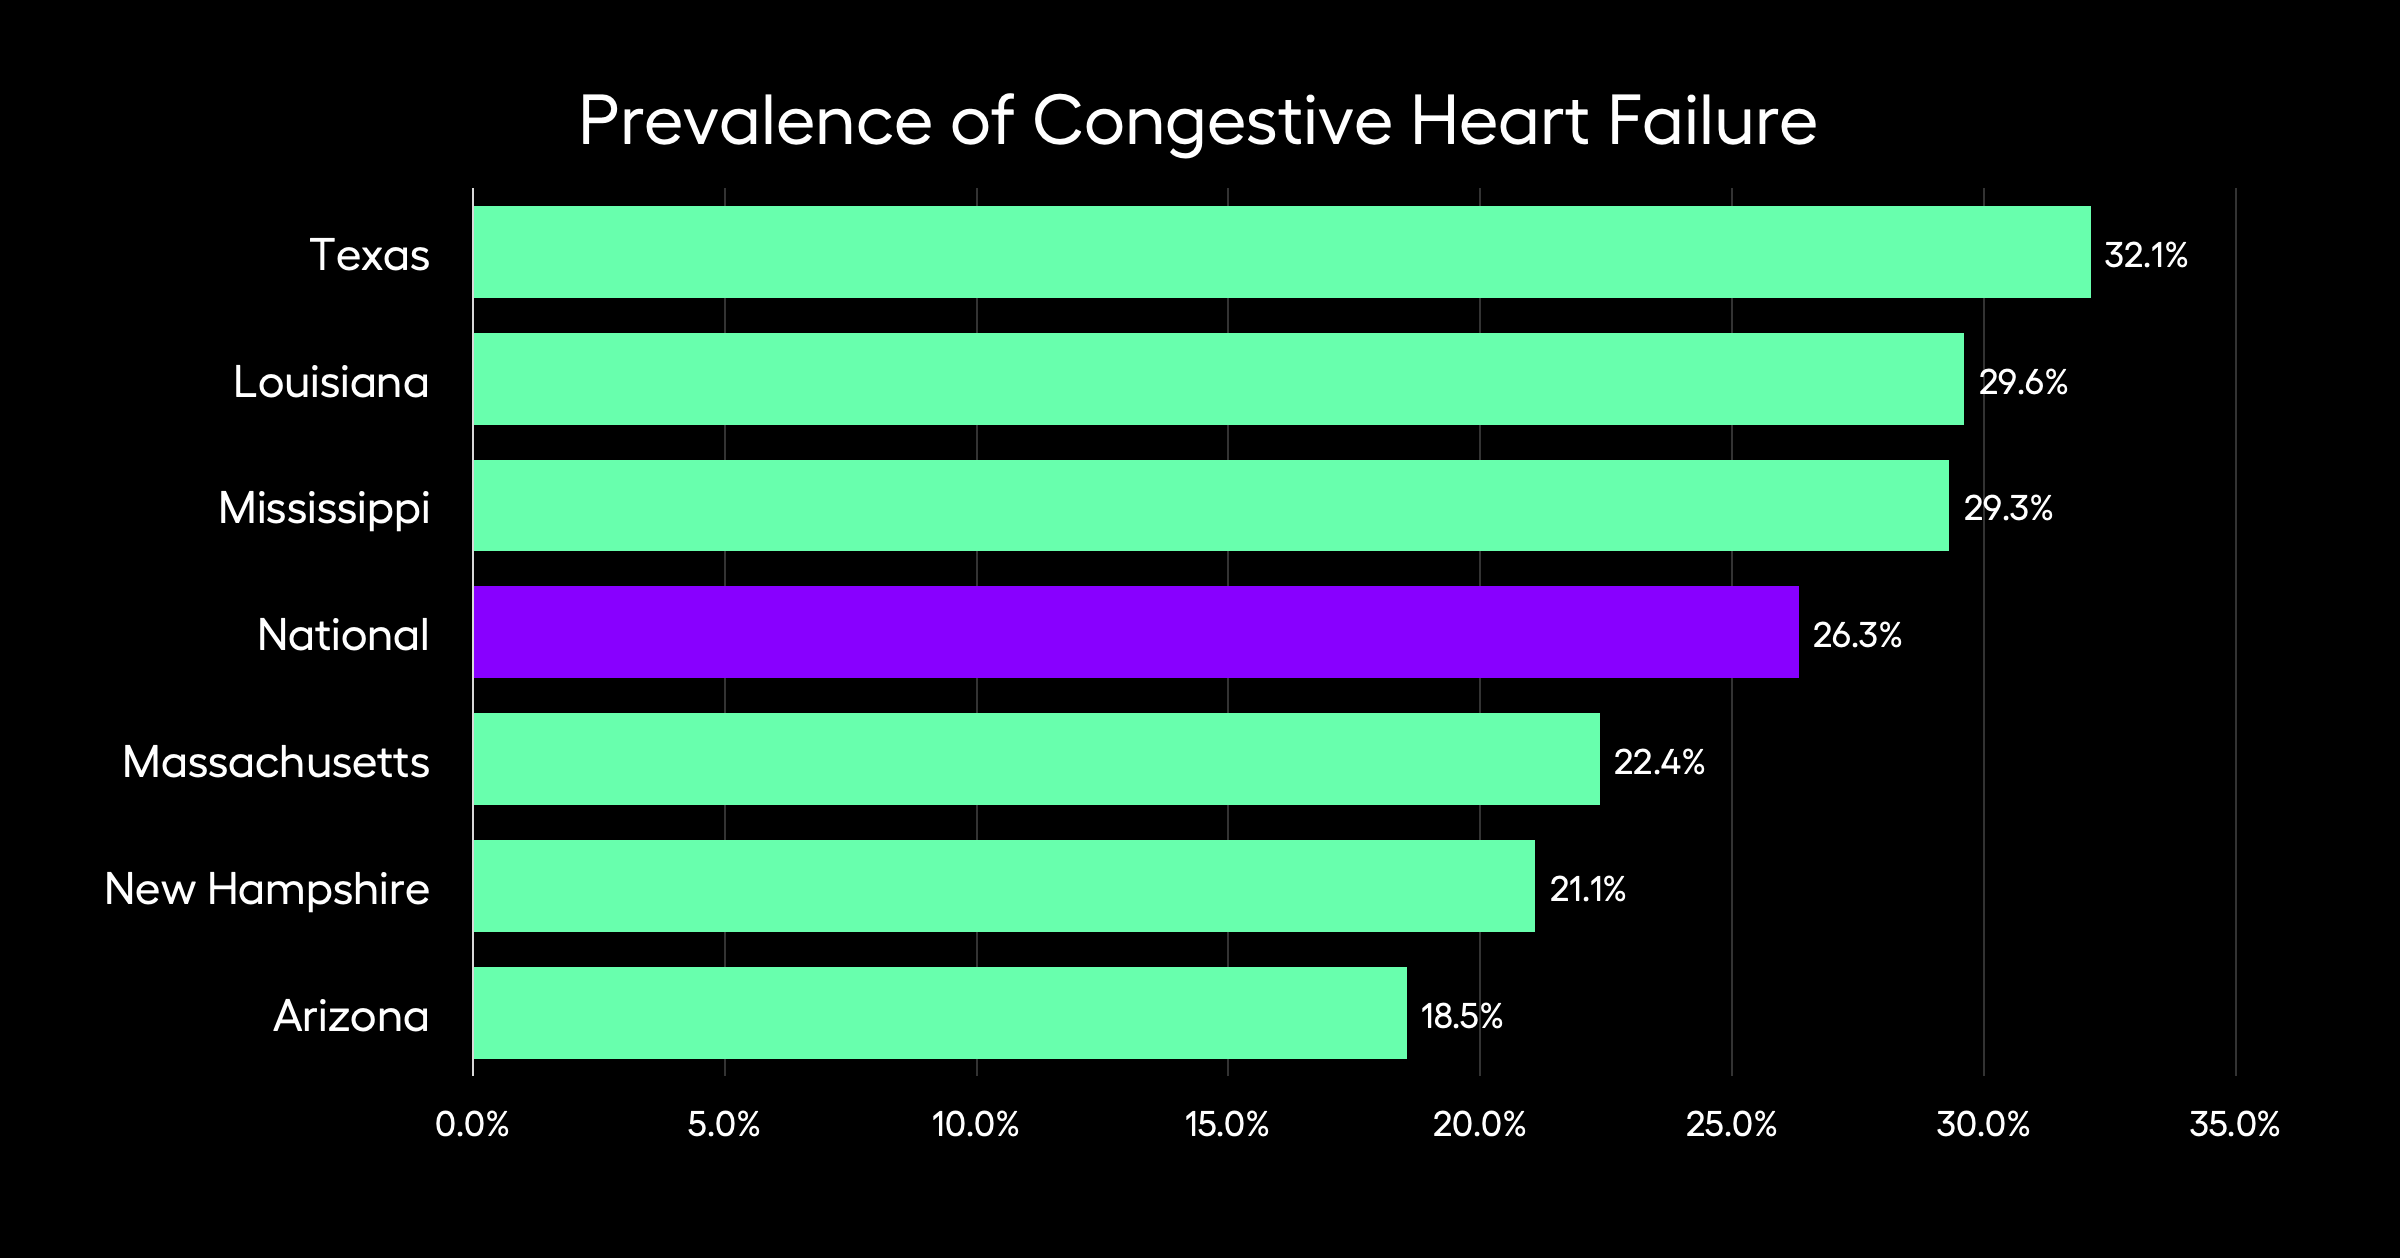 Prevalence of Congestive Heart Failure across the U.S.